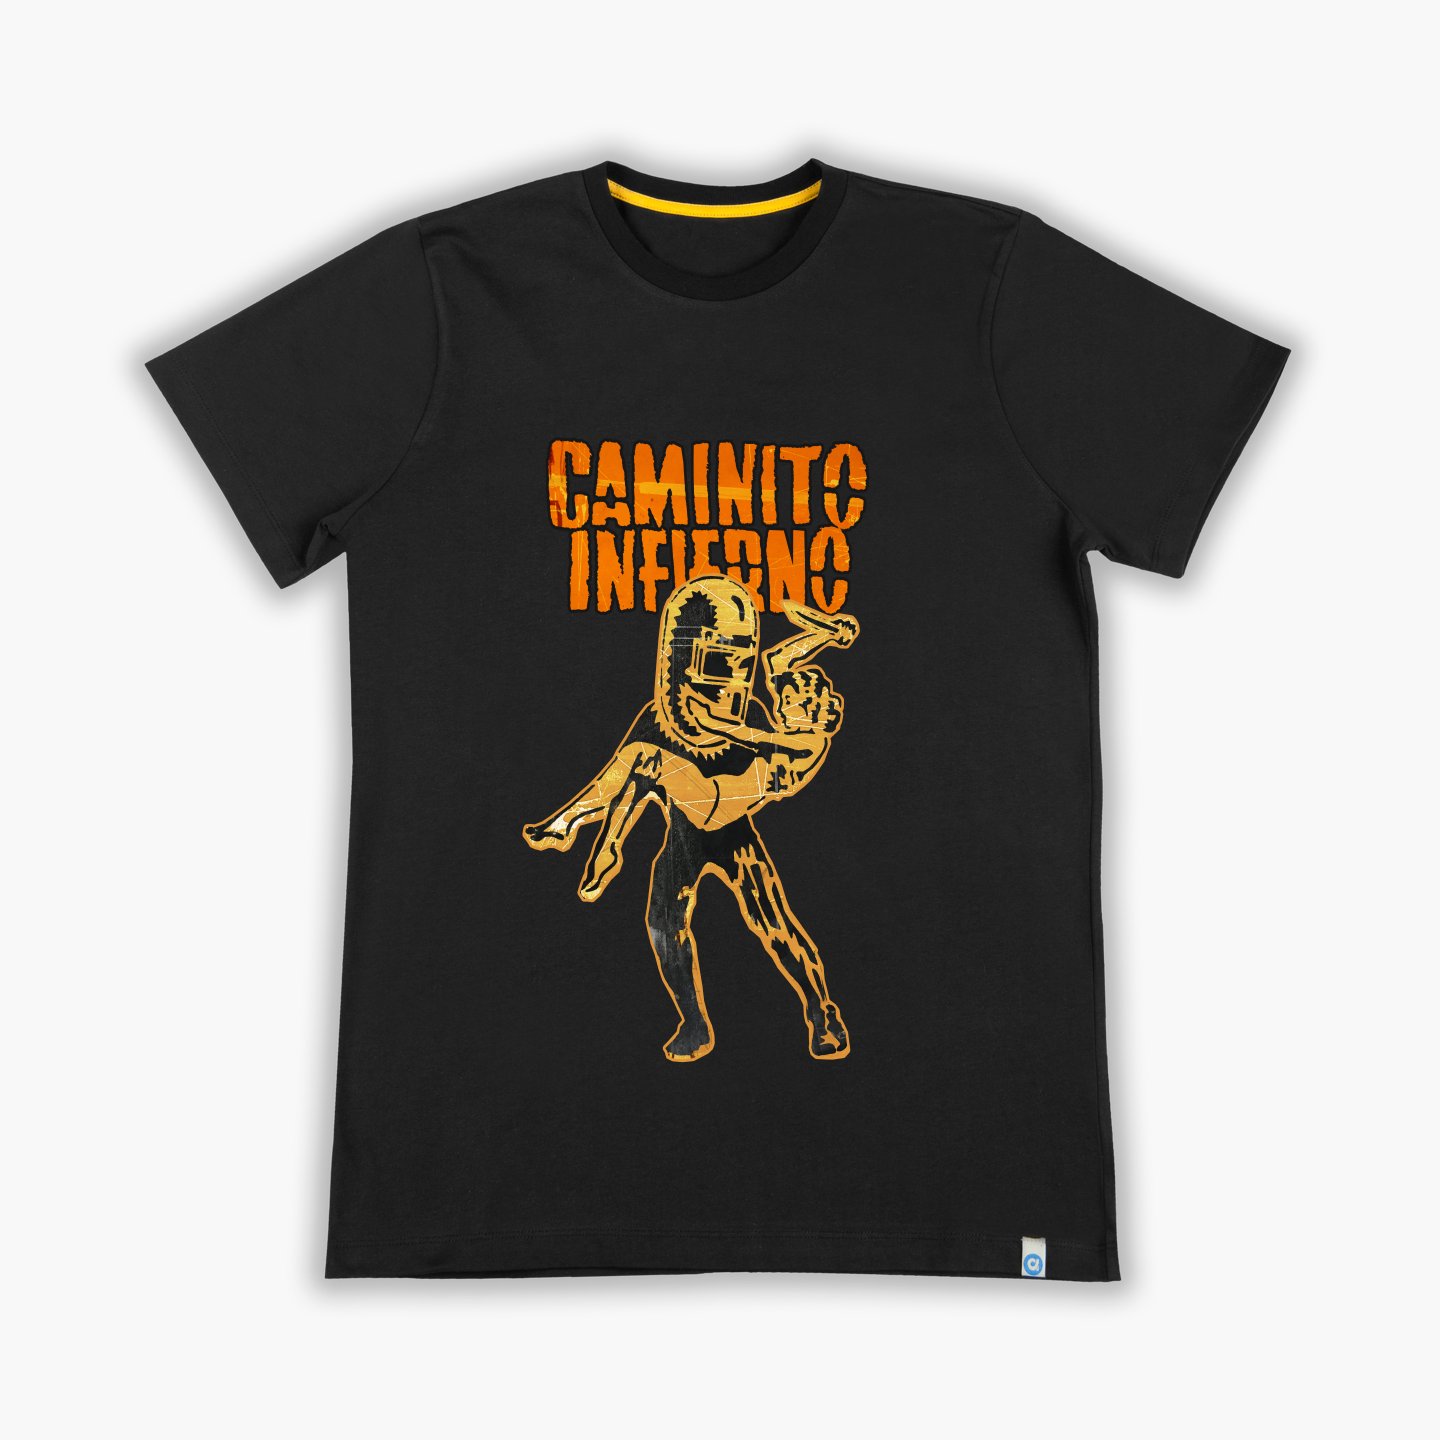 Caminito Inferno - Tişört